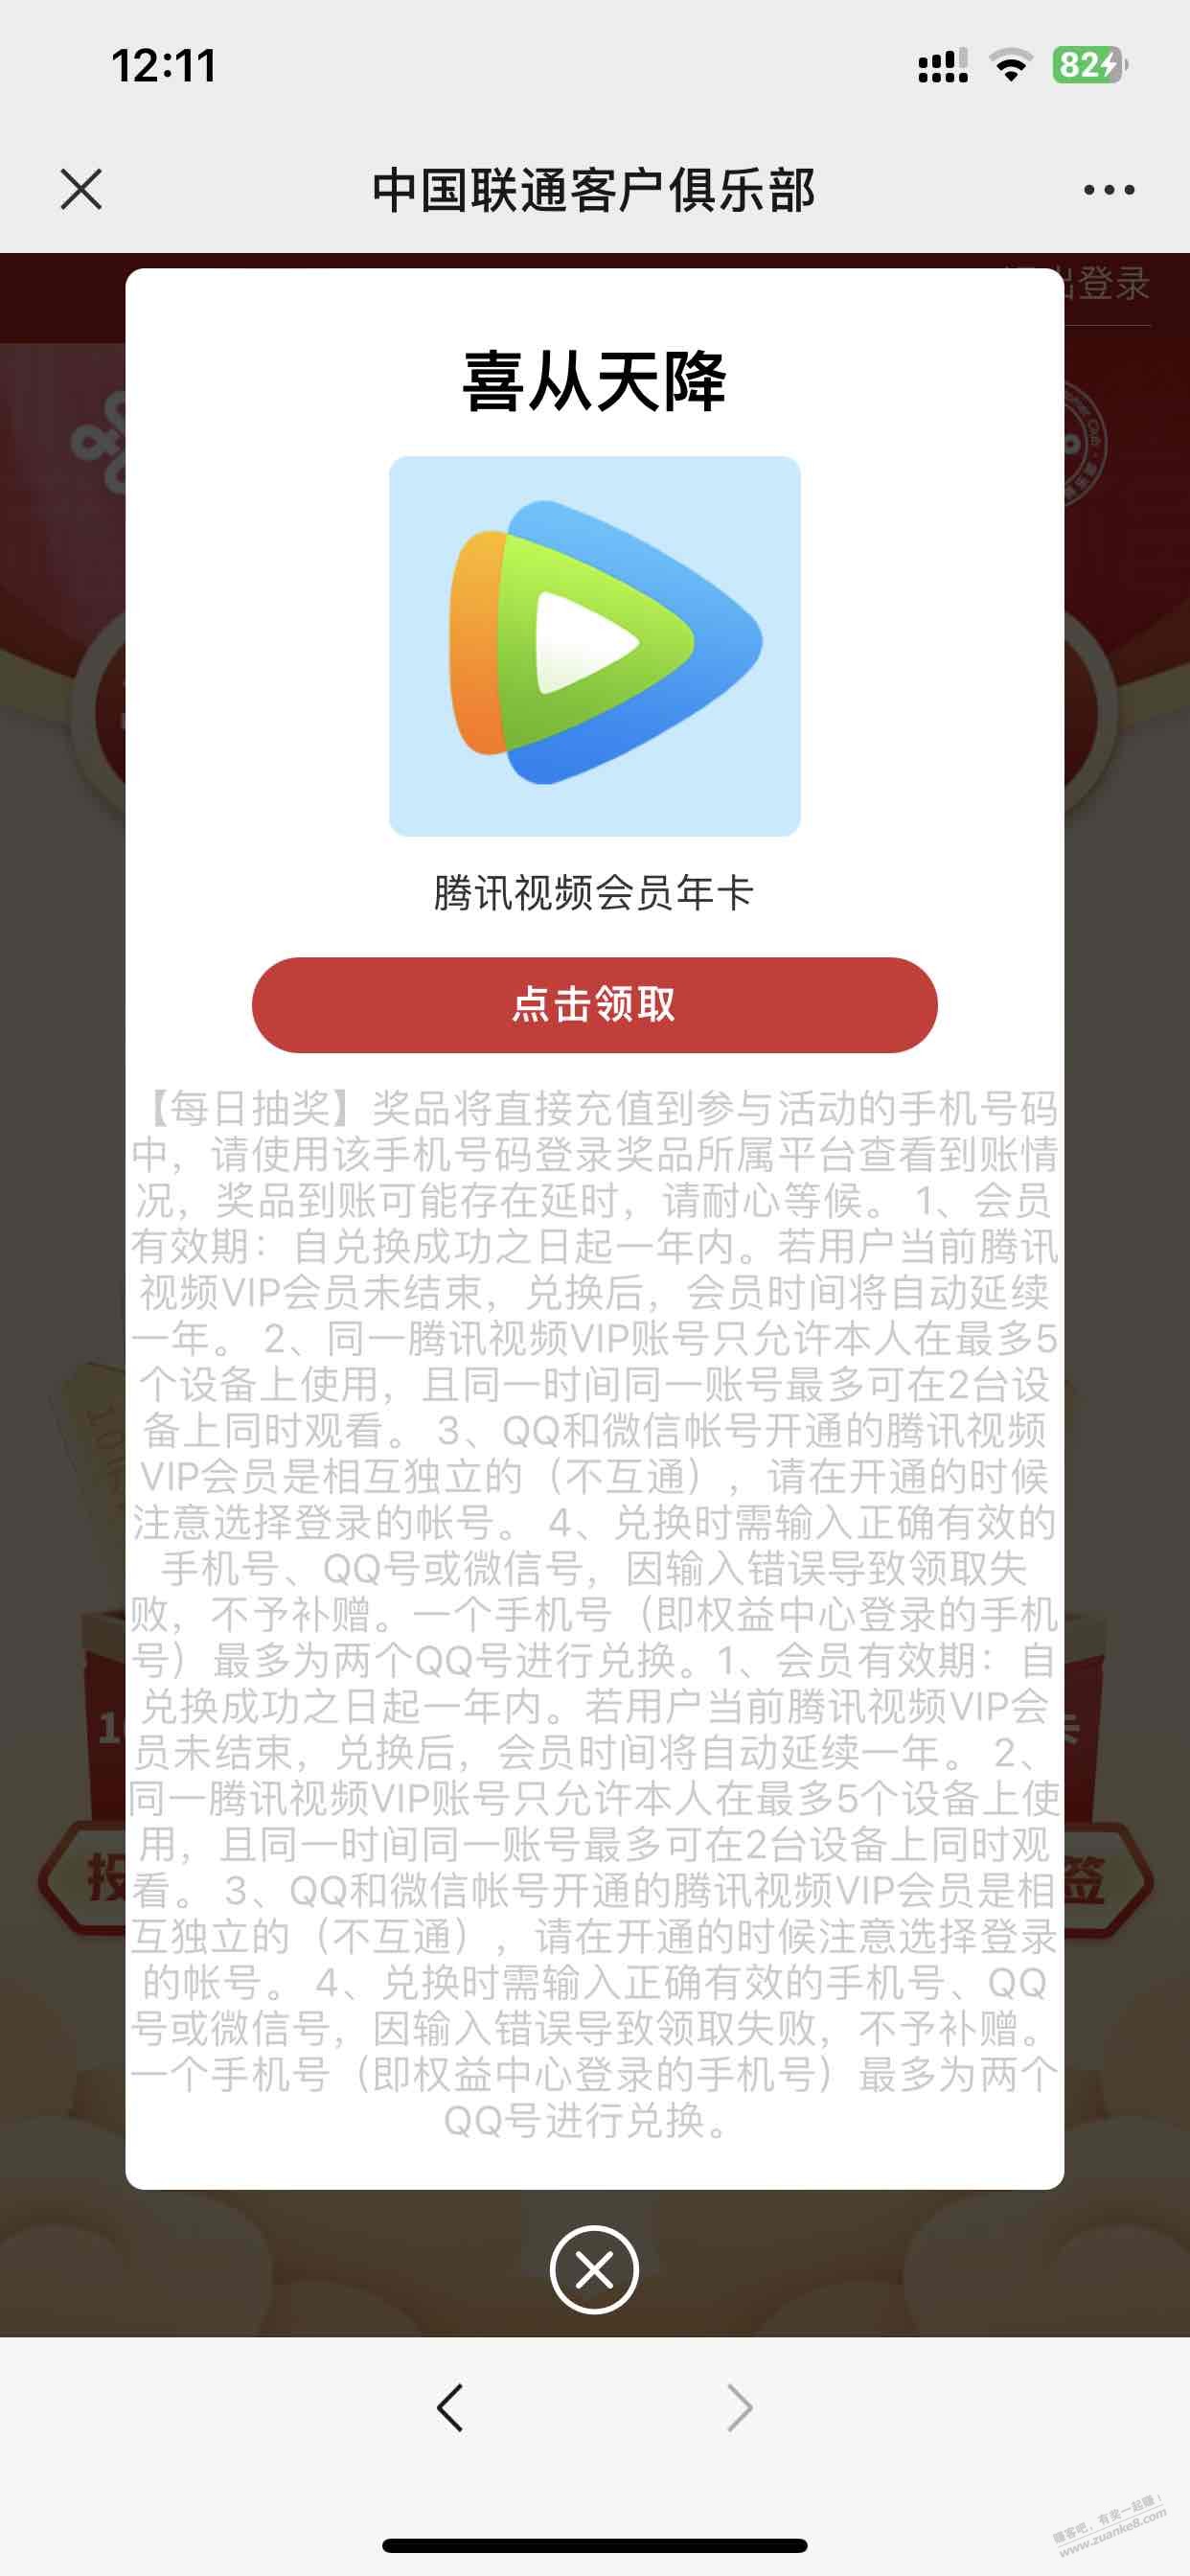 中国联通客服公众号-腾讯年卡